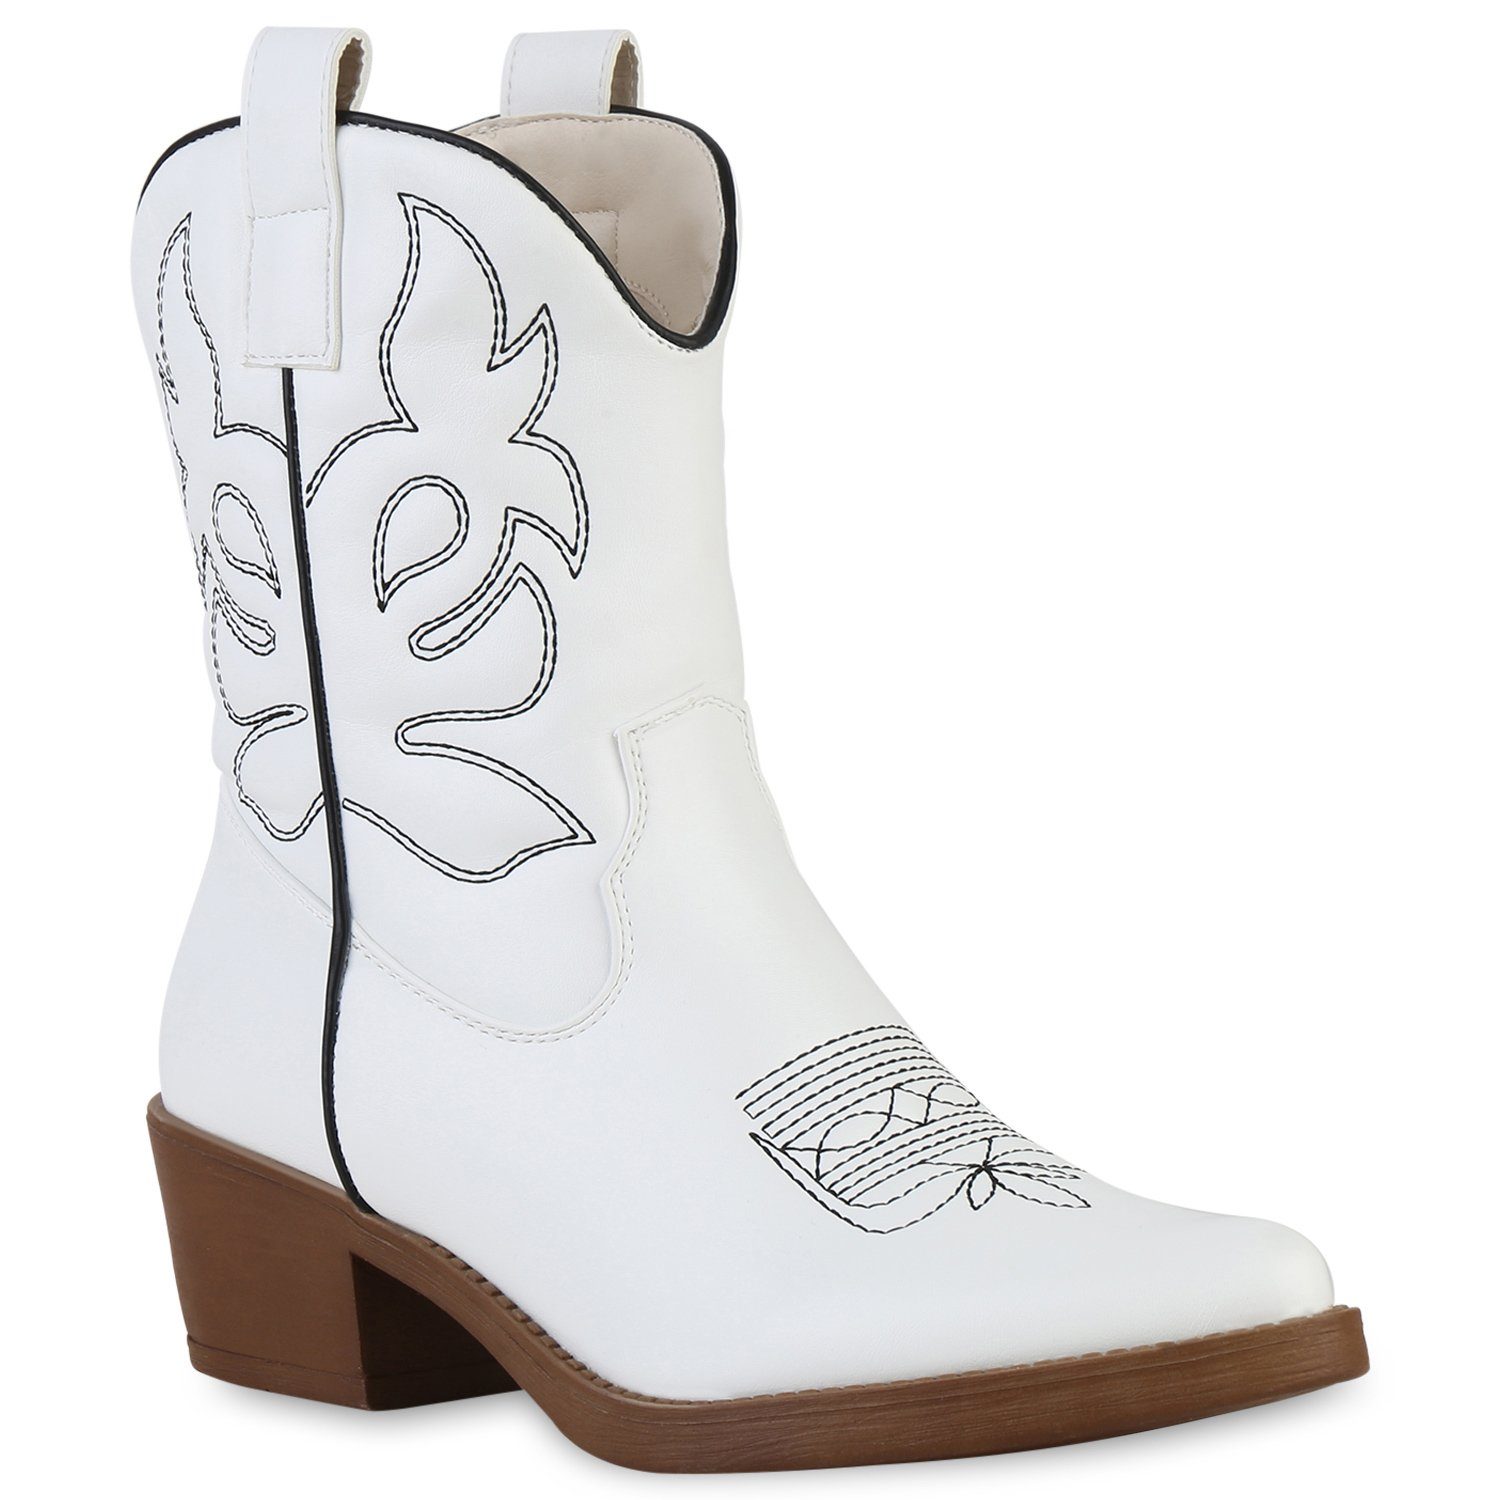 VAN HILL 840203 Cowboy Boots Schuhe online kaufen | OTTO